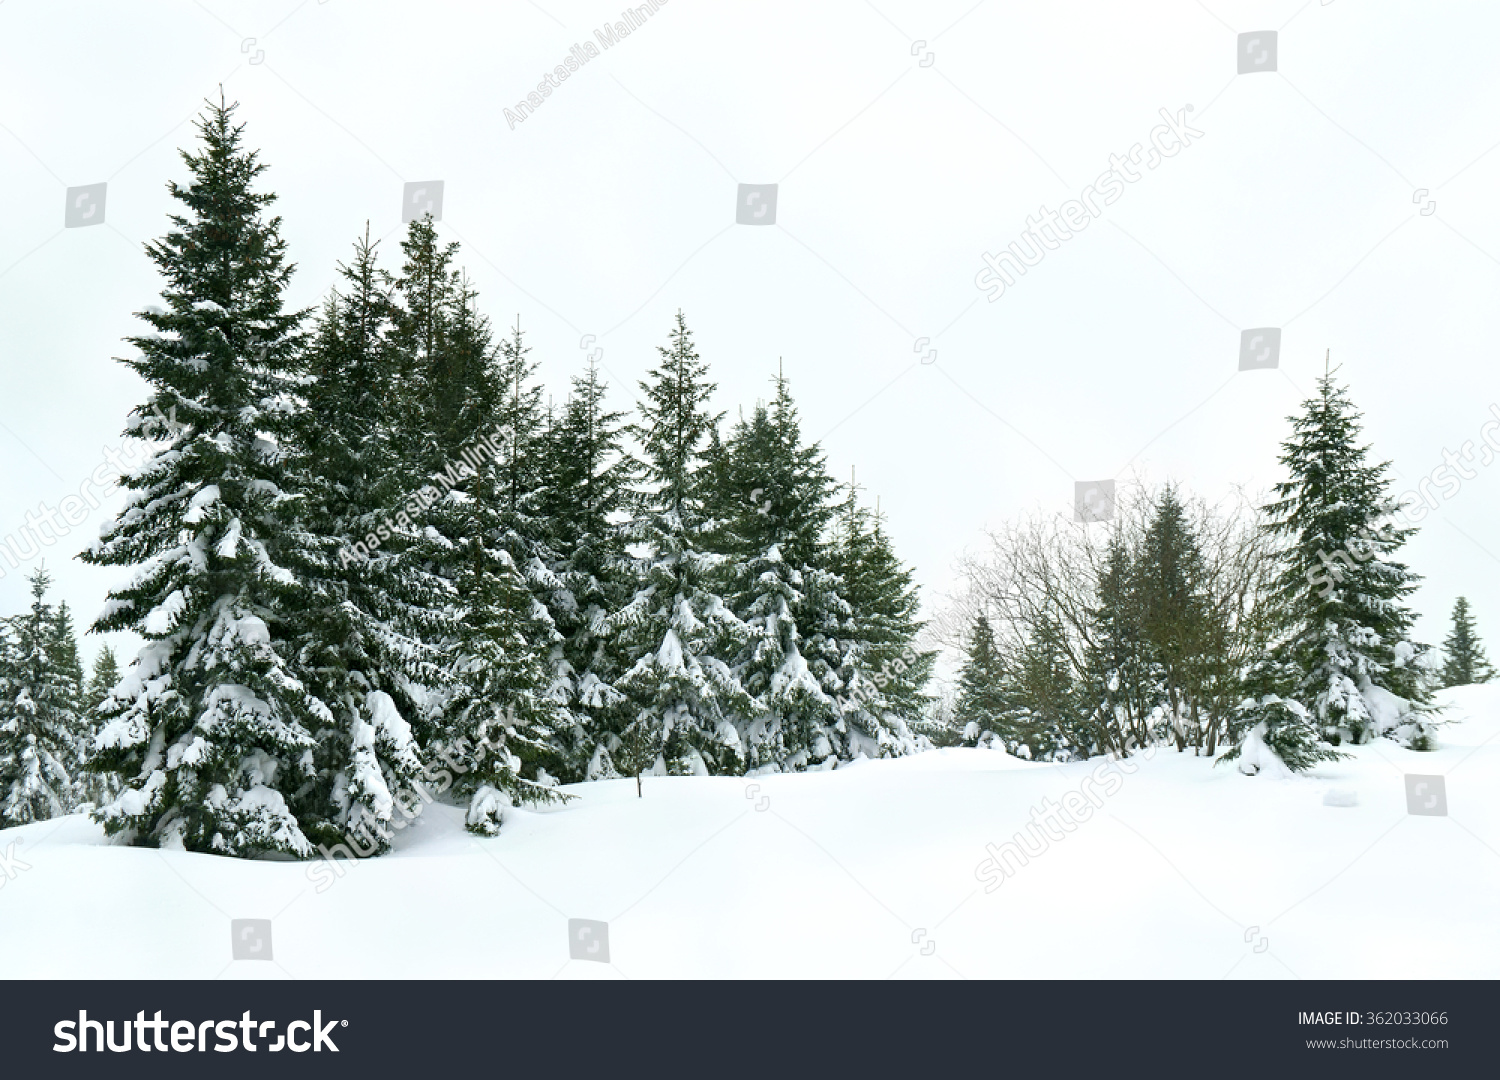 Winter fir forest after snowfall #362033066